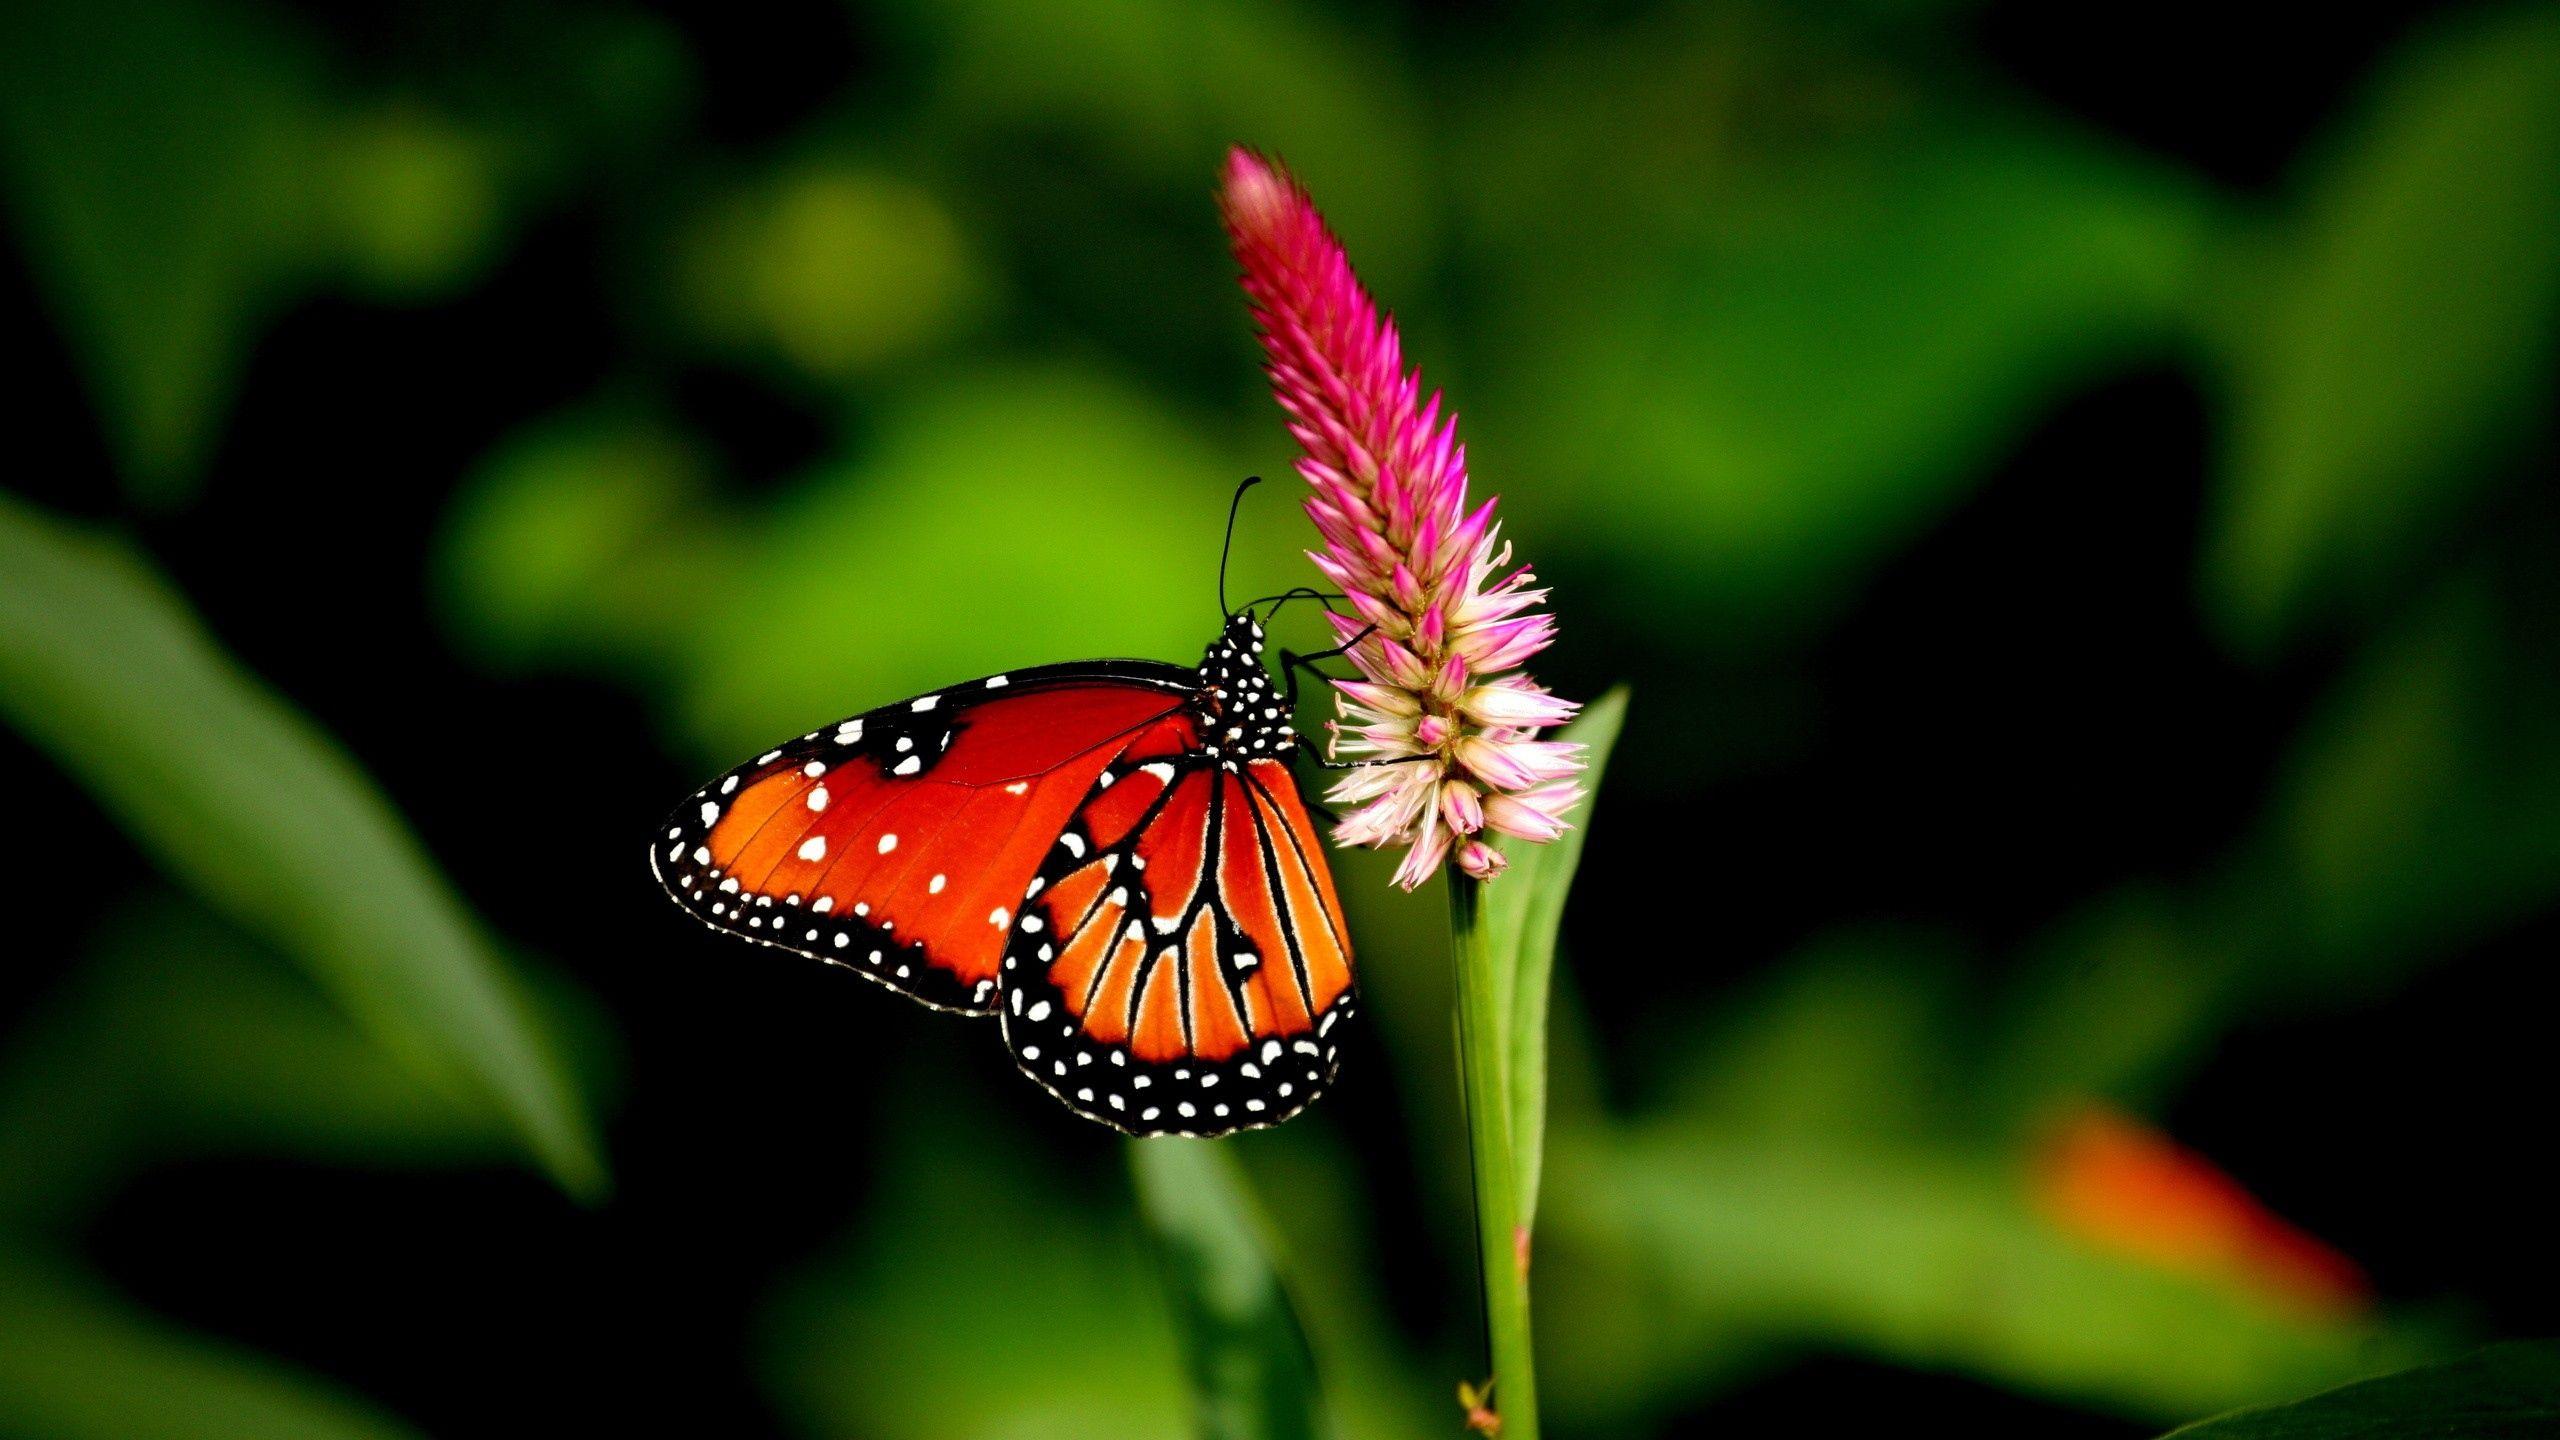 Hình nền con bướm 2560x1440, Hình ảnh, Hình ảnh